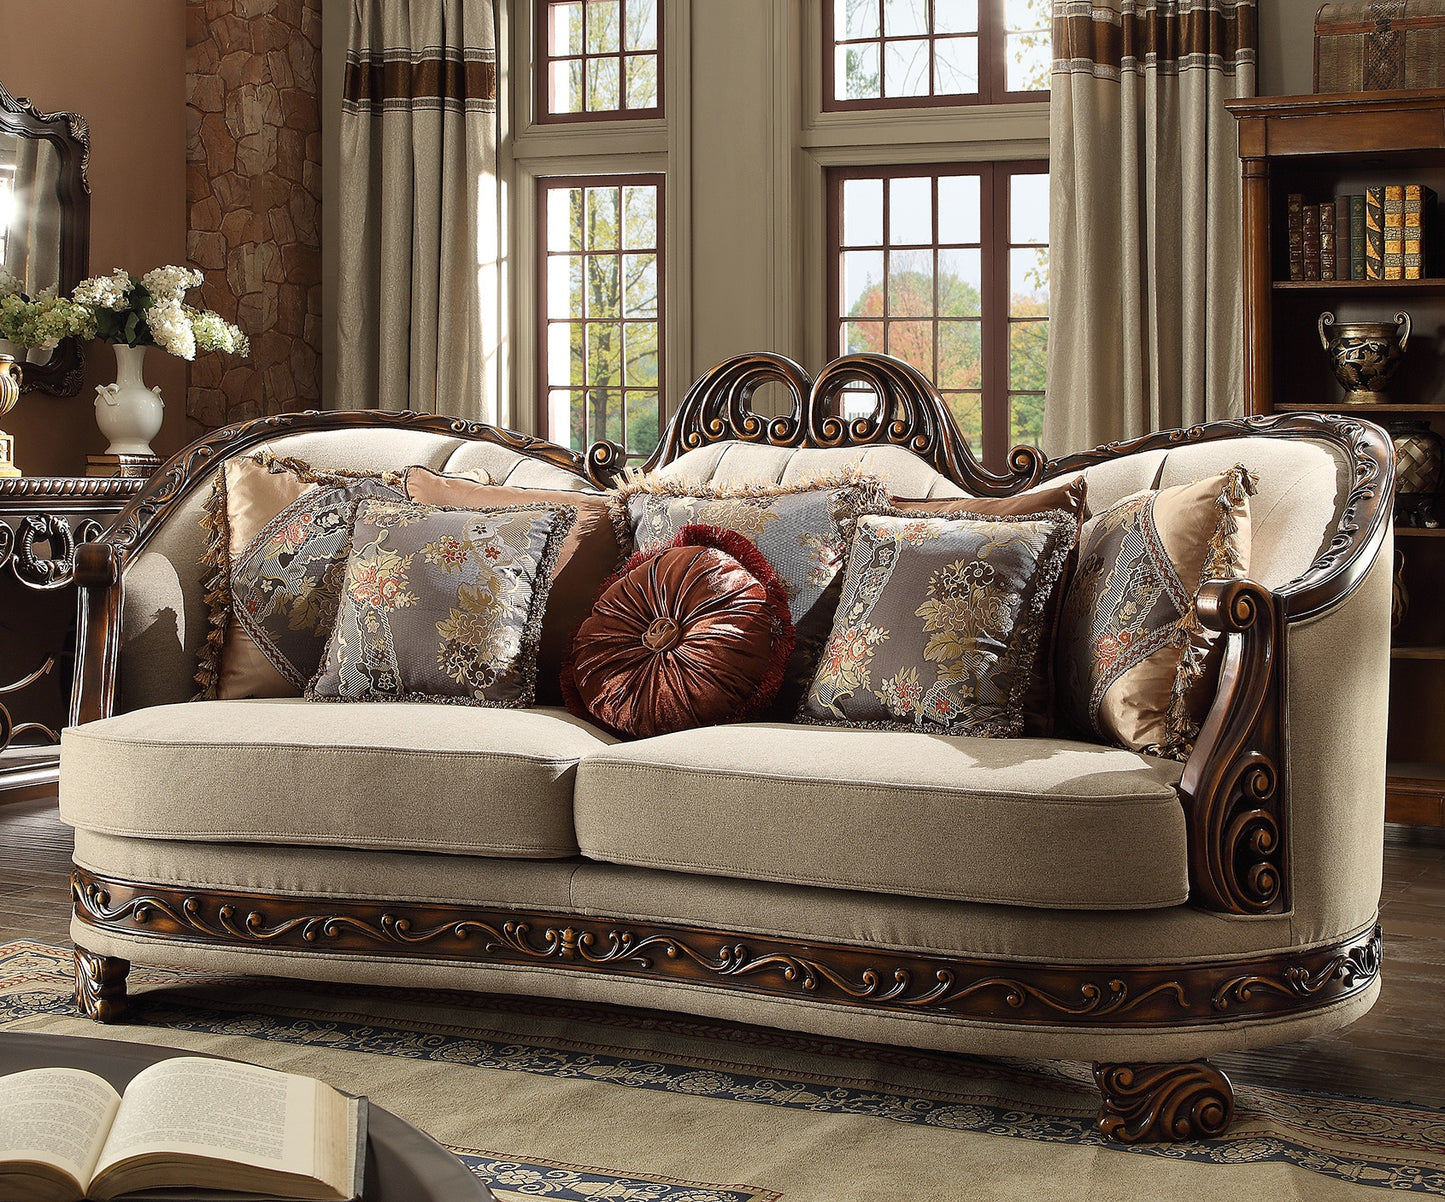 Fabric Sofa in Dark Red Mahogany & Metallic Antique Gold Finish S1623 European